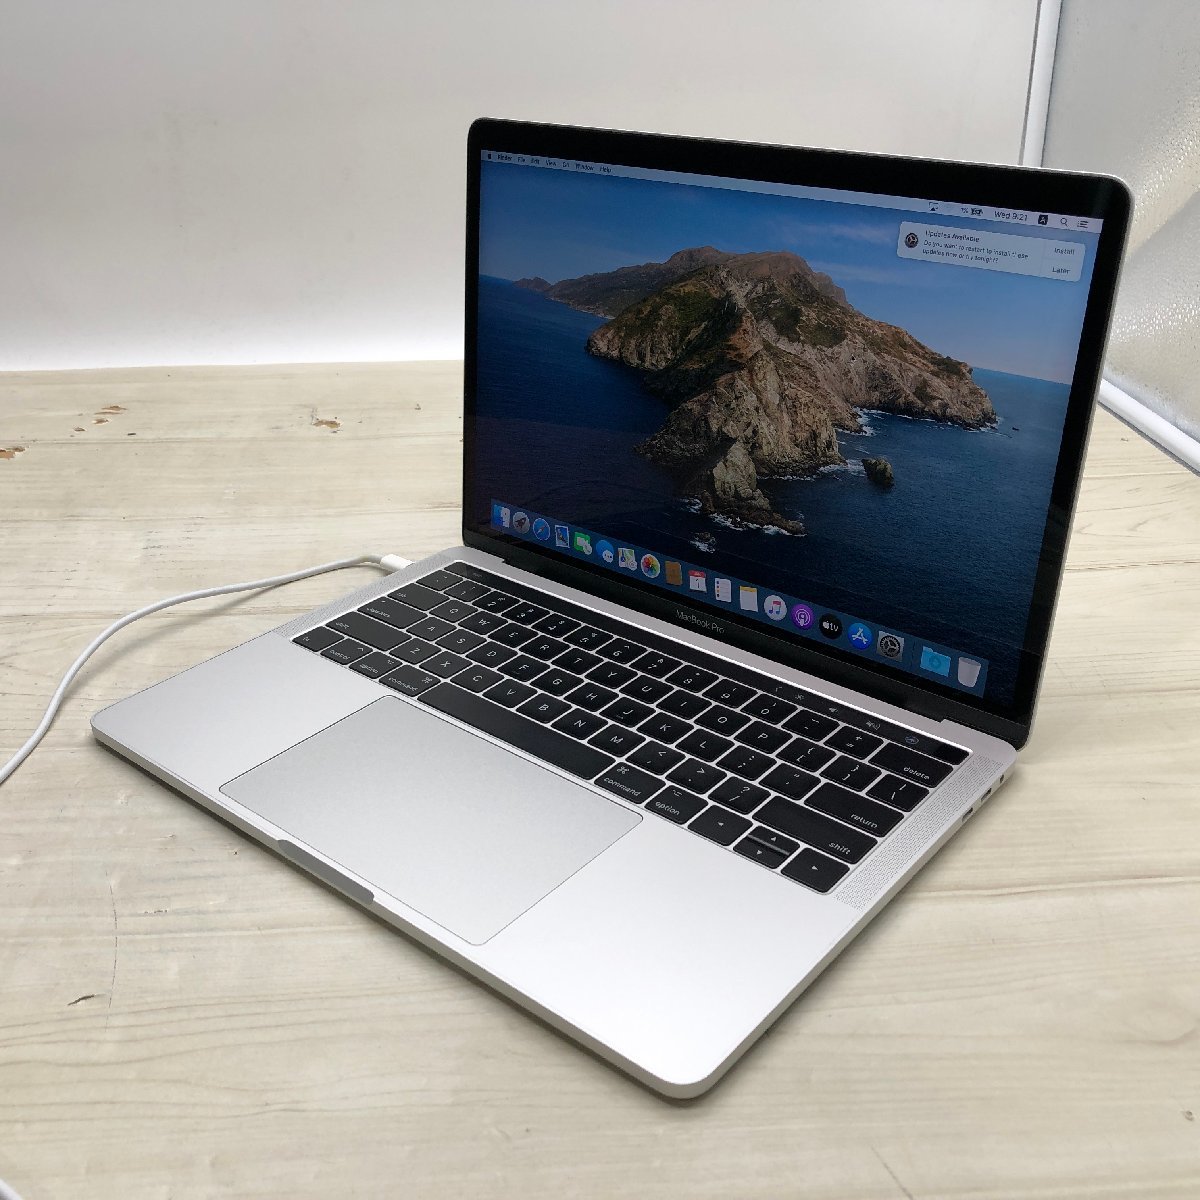 難あり】 Apple MacBook Pro 13-inch 2017 Four Thunderbolt 3 ports